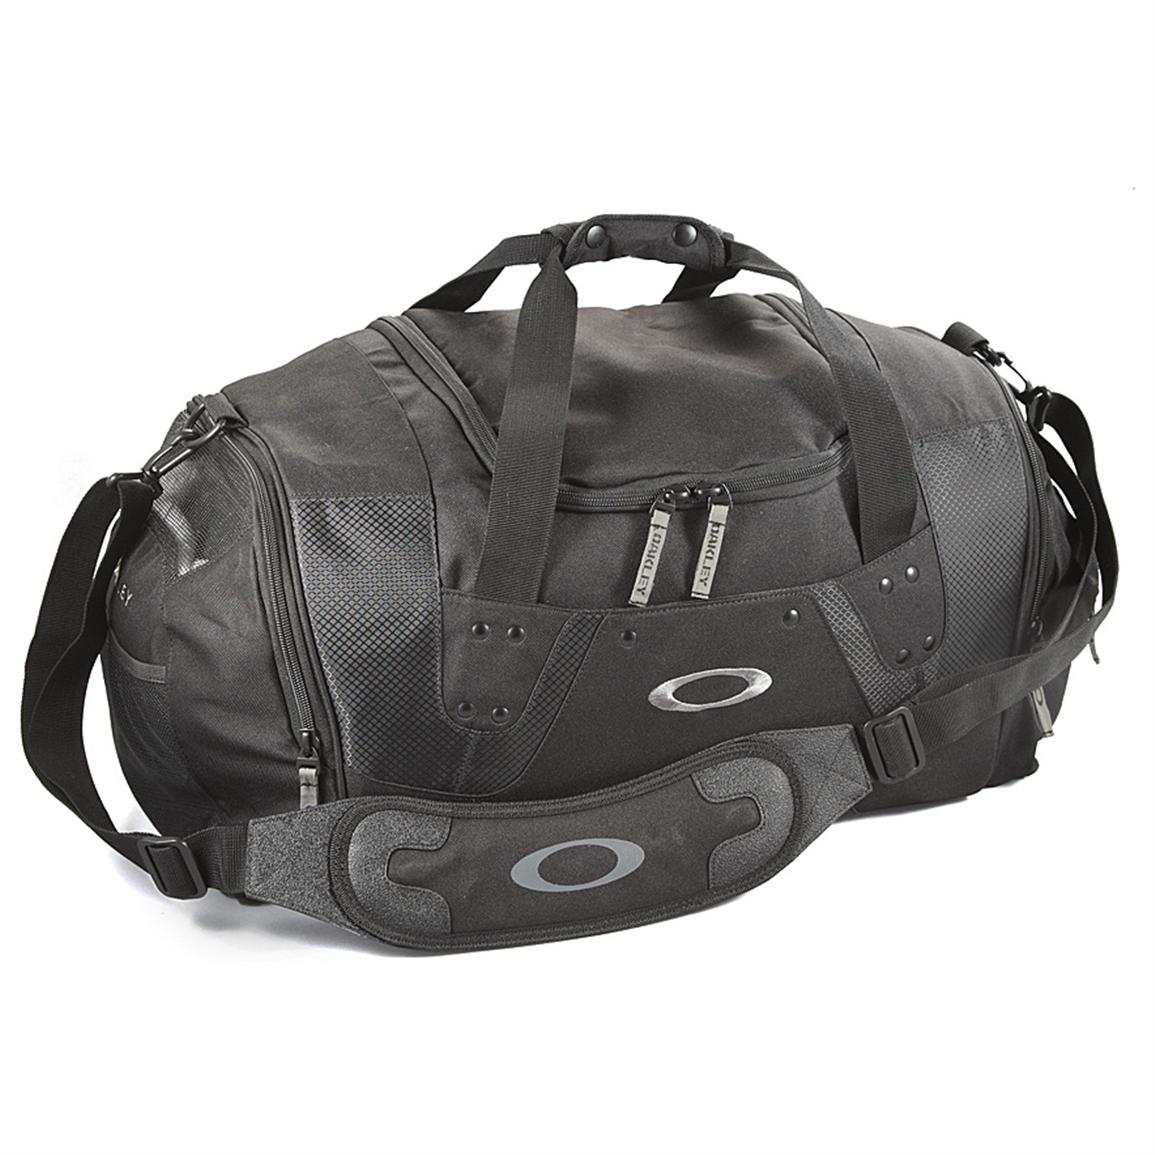 Oakley® Large Duffel Bag - 227698, Dry Bags & Sacks at Sportsman's Guide